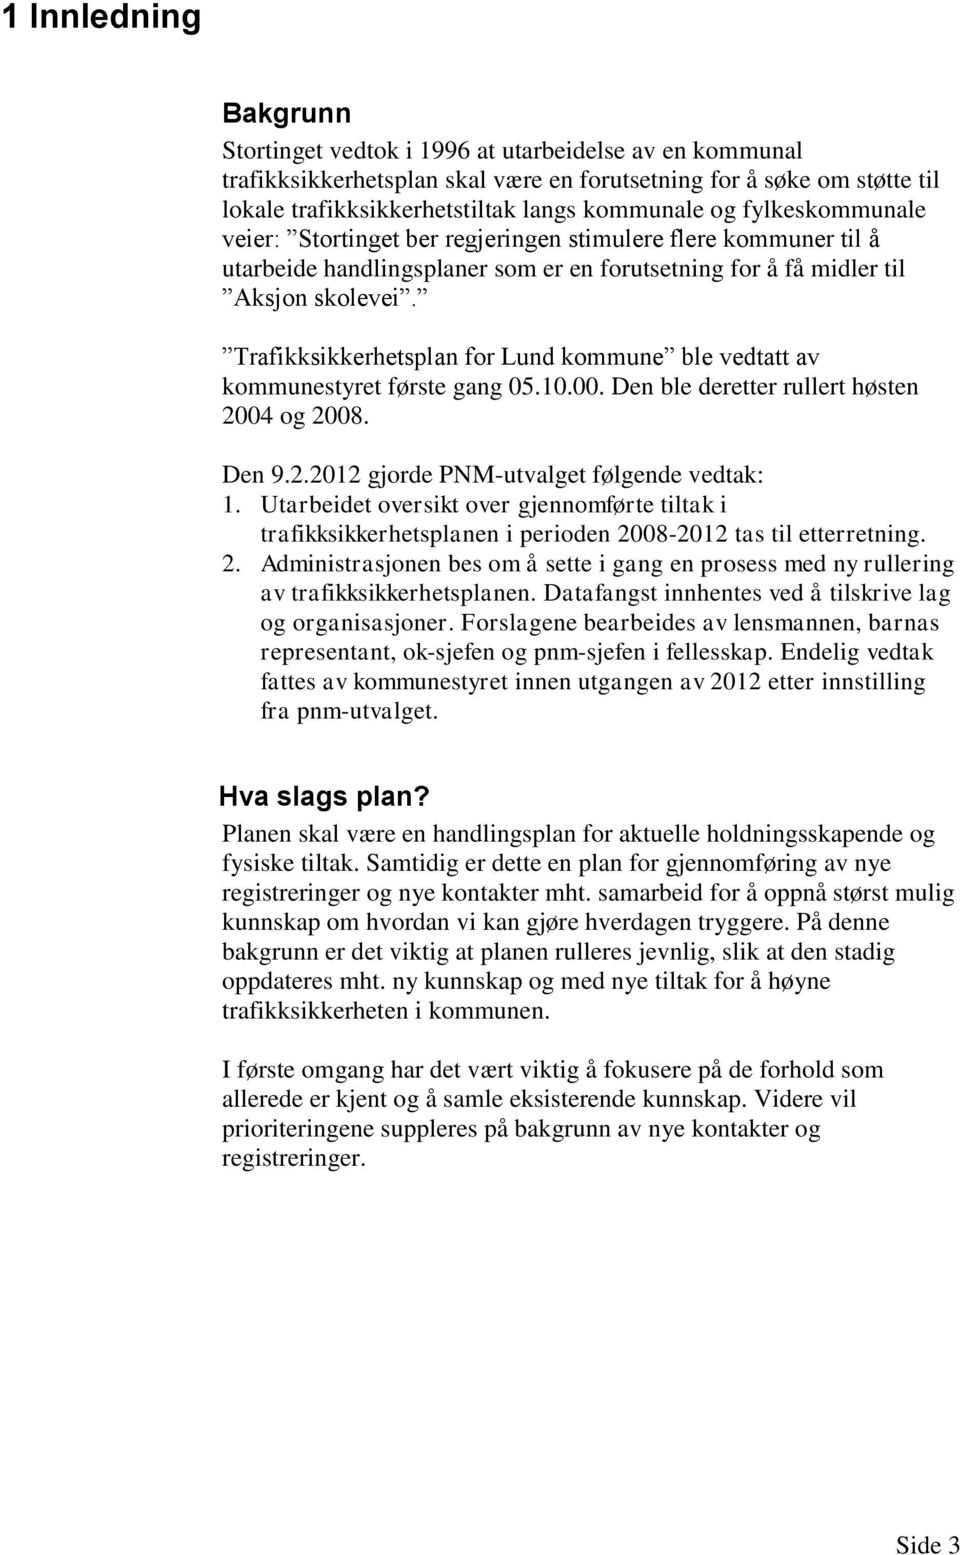 Trafikksikkerhetsplan for Lund kommune ble vedtatt av kommunestyret første gang 05.10.00. Den ble deretter rullert høsten 2004 og 2008. Den 9.2.2012 gjorde PNM-utvalget følgende vedtak: 1.